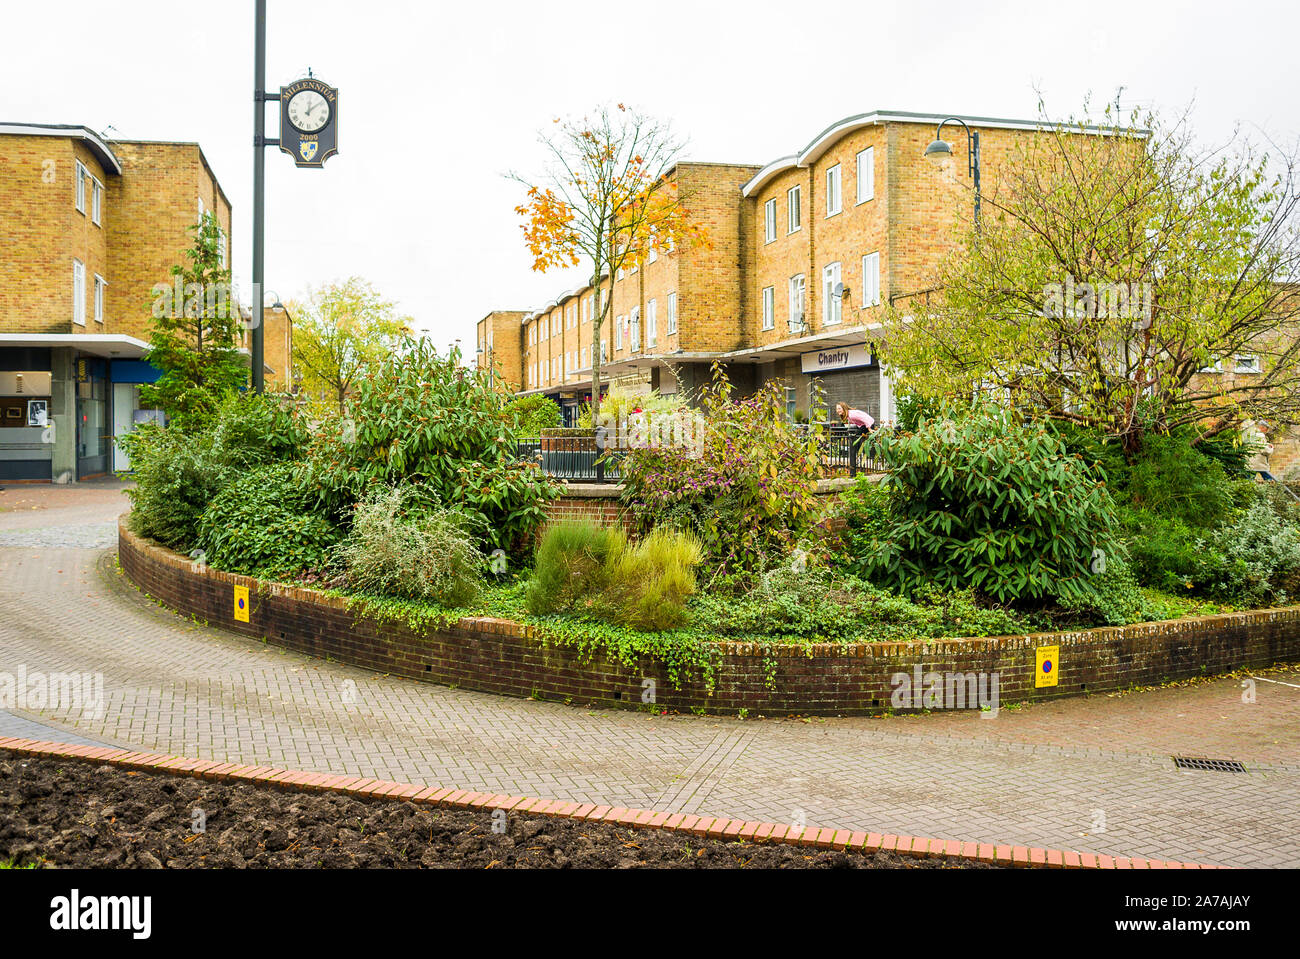 Beispiel für grünen städtischen Landschaftsgestaltung in Westbury Wiltshire England Großbritannien Stockfoto